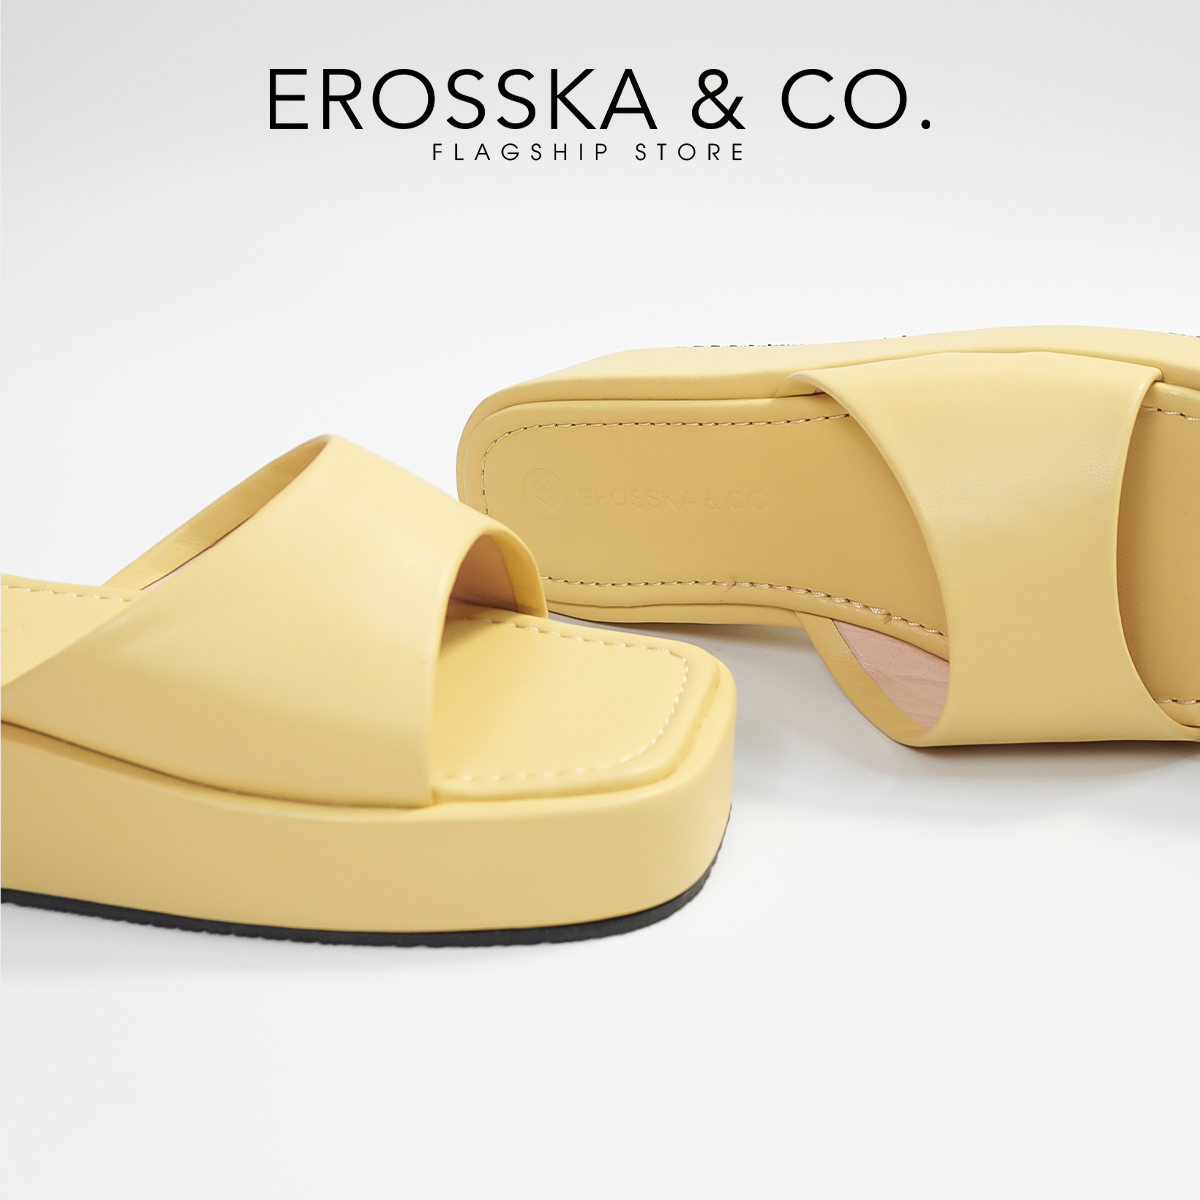 Erosska - Dép nữ thời trang đế xuồng quai ngang kiểu dáng cơ bản - SB021